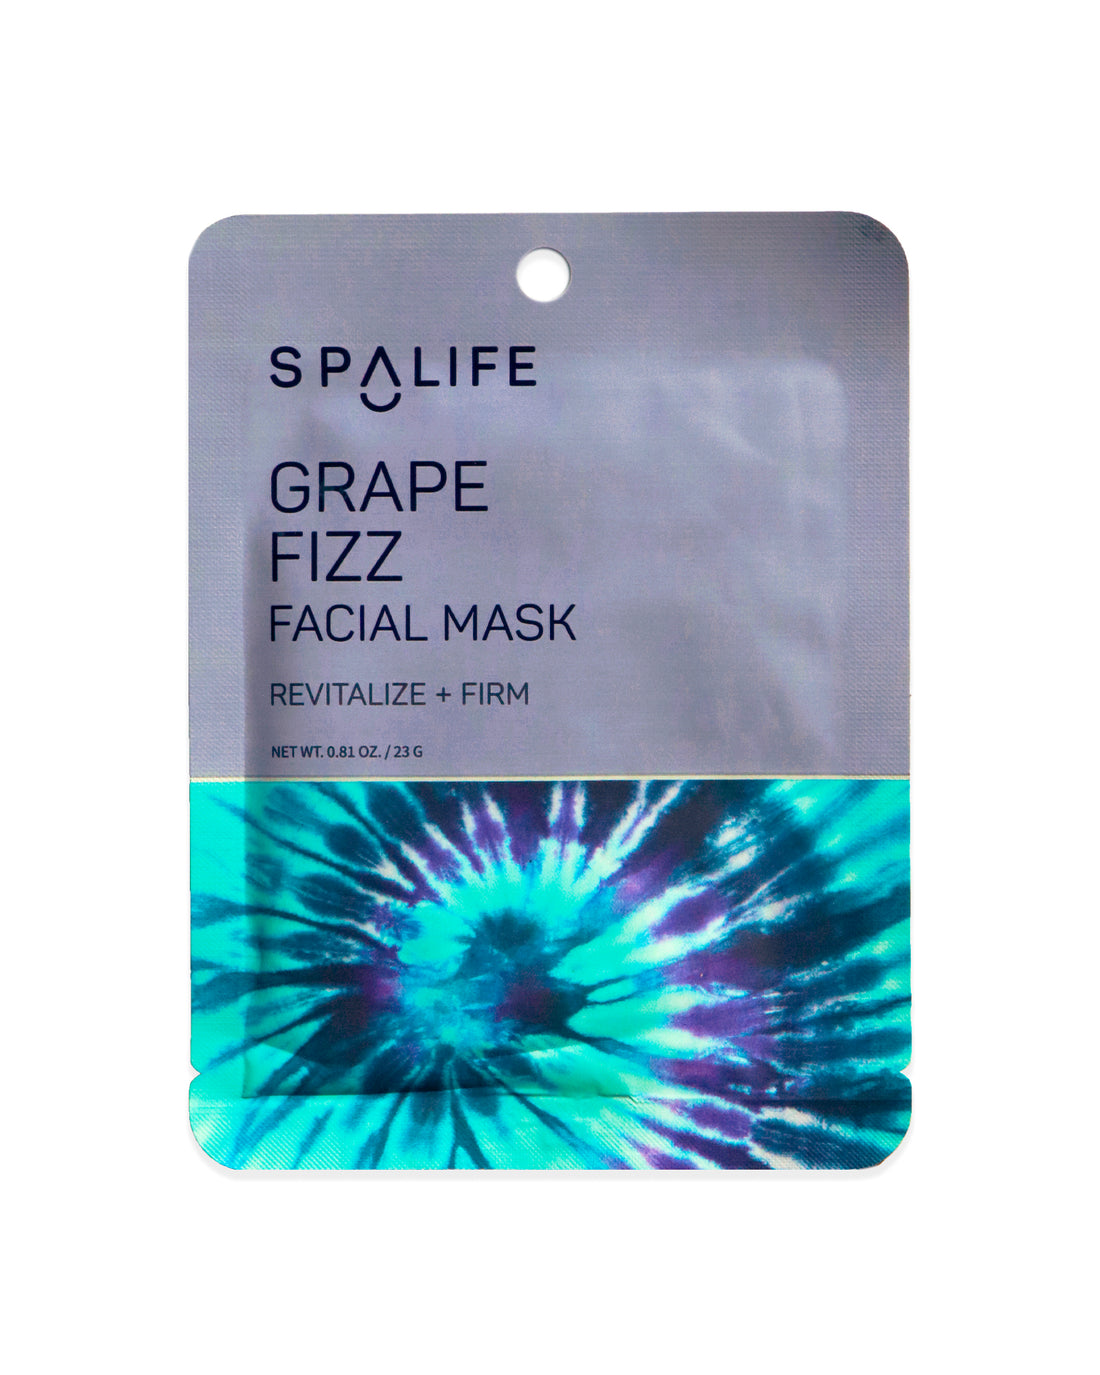 Grape_fizz_facial_mask_packet-729